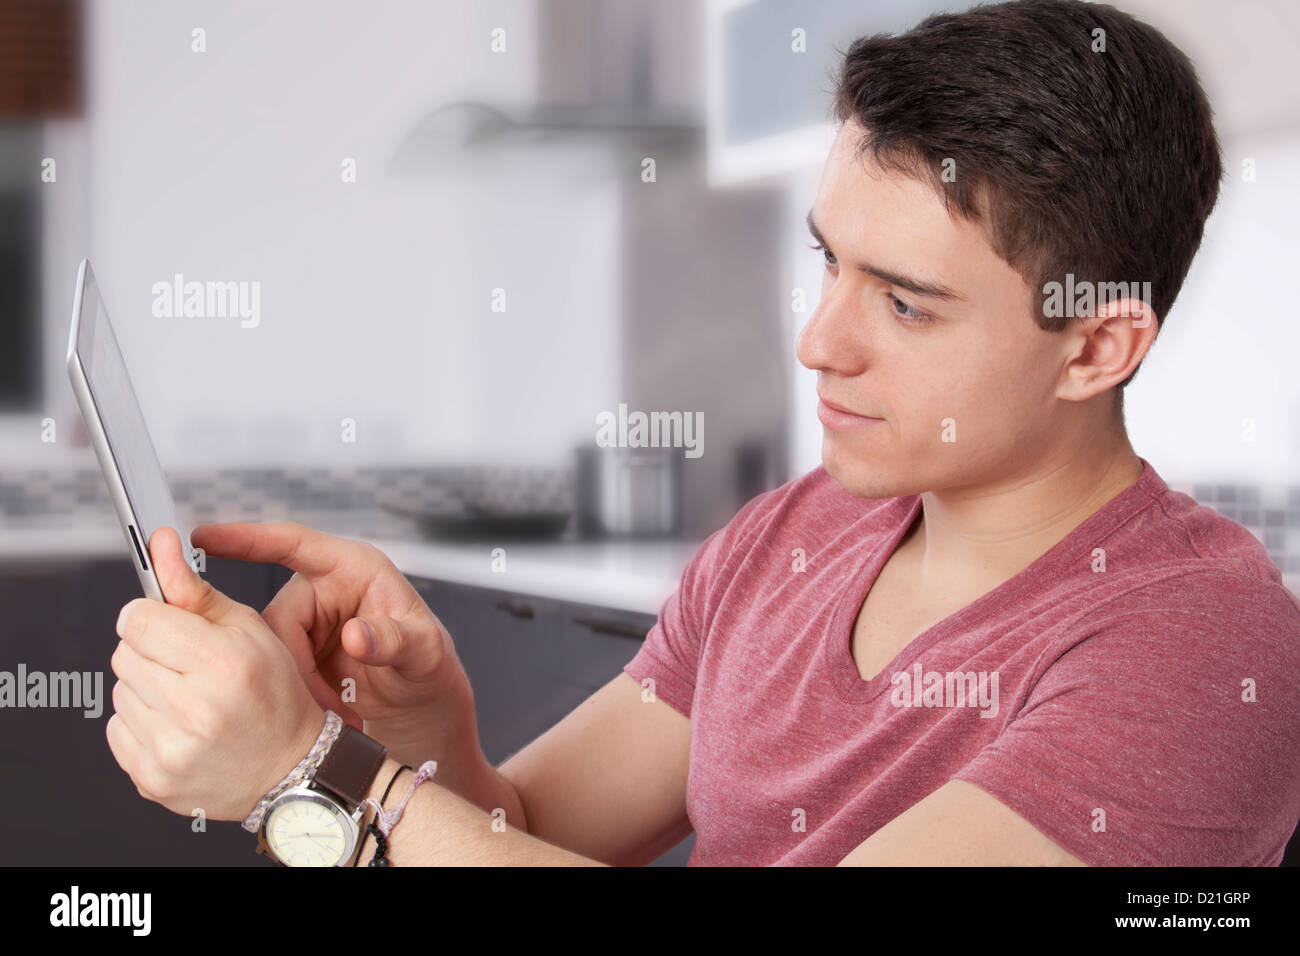 Jeune homme à l'aide d'une tablette numérique, regarder l'écran ou moniteur. Situé dans une cuisine moderne. Banque D'Images